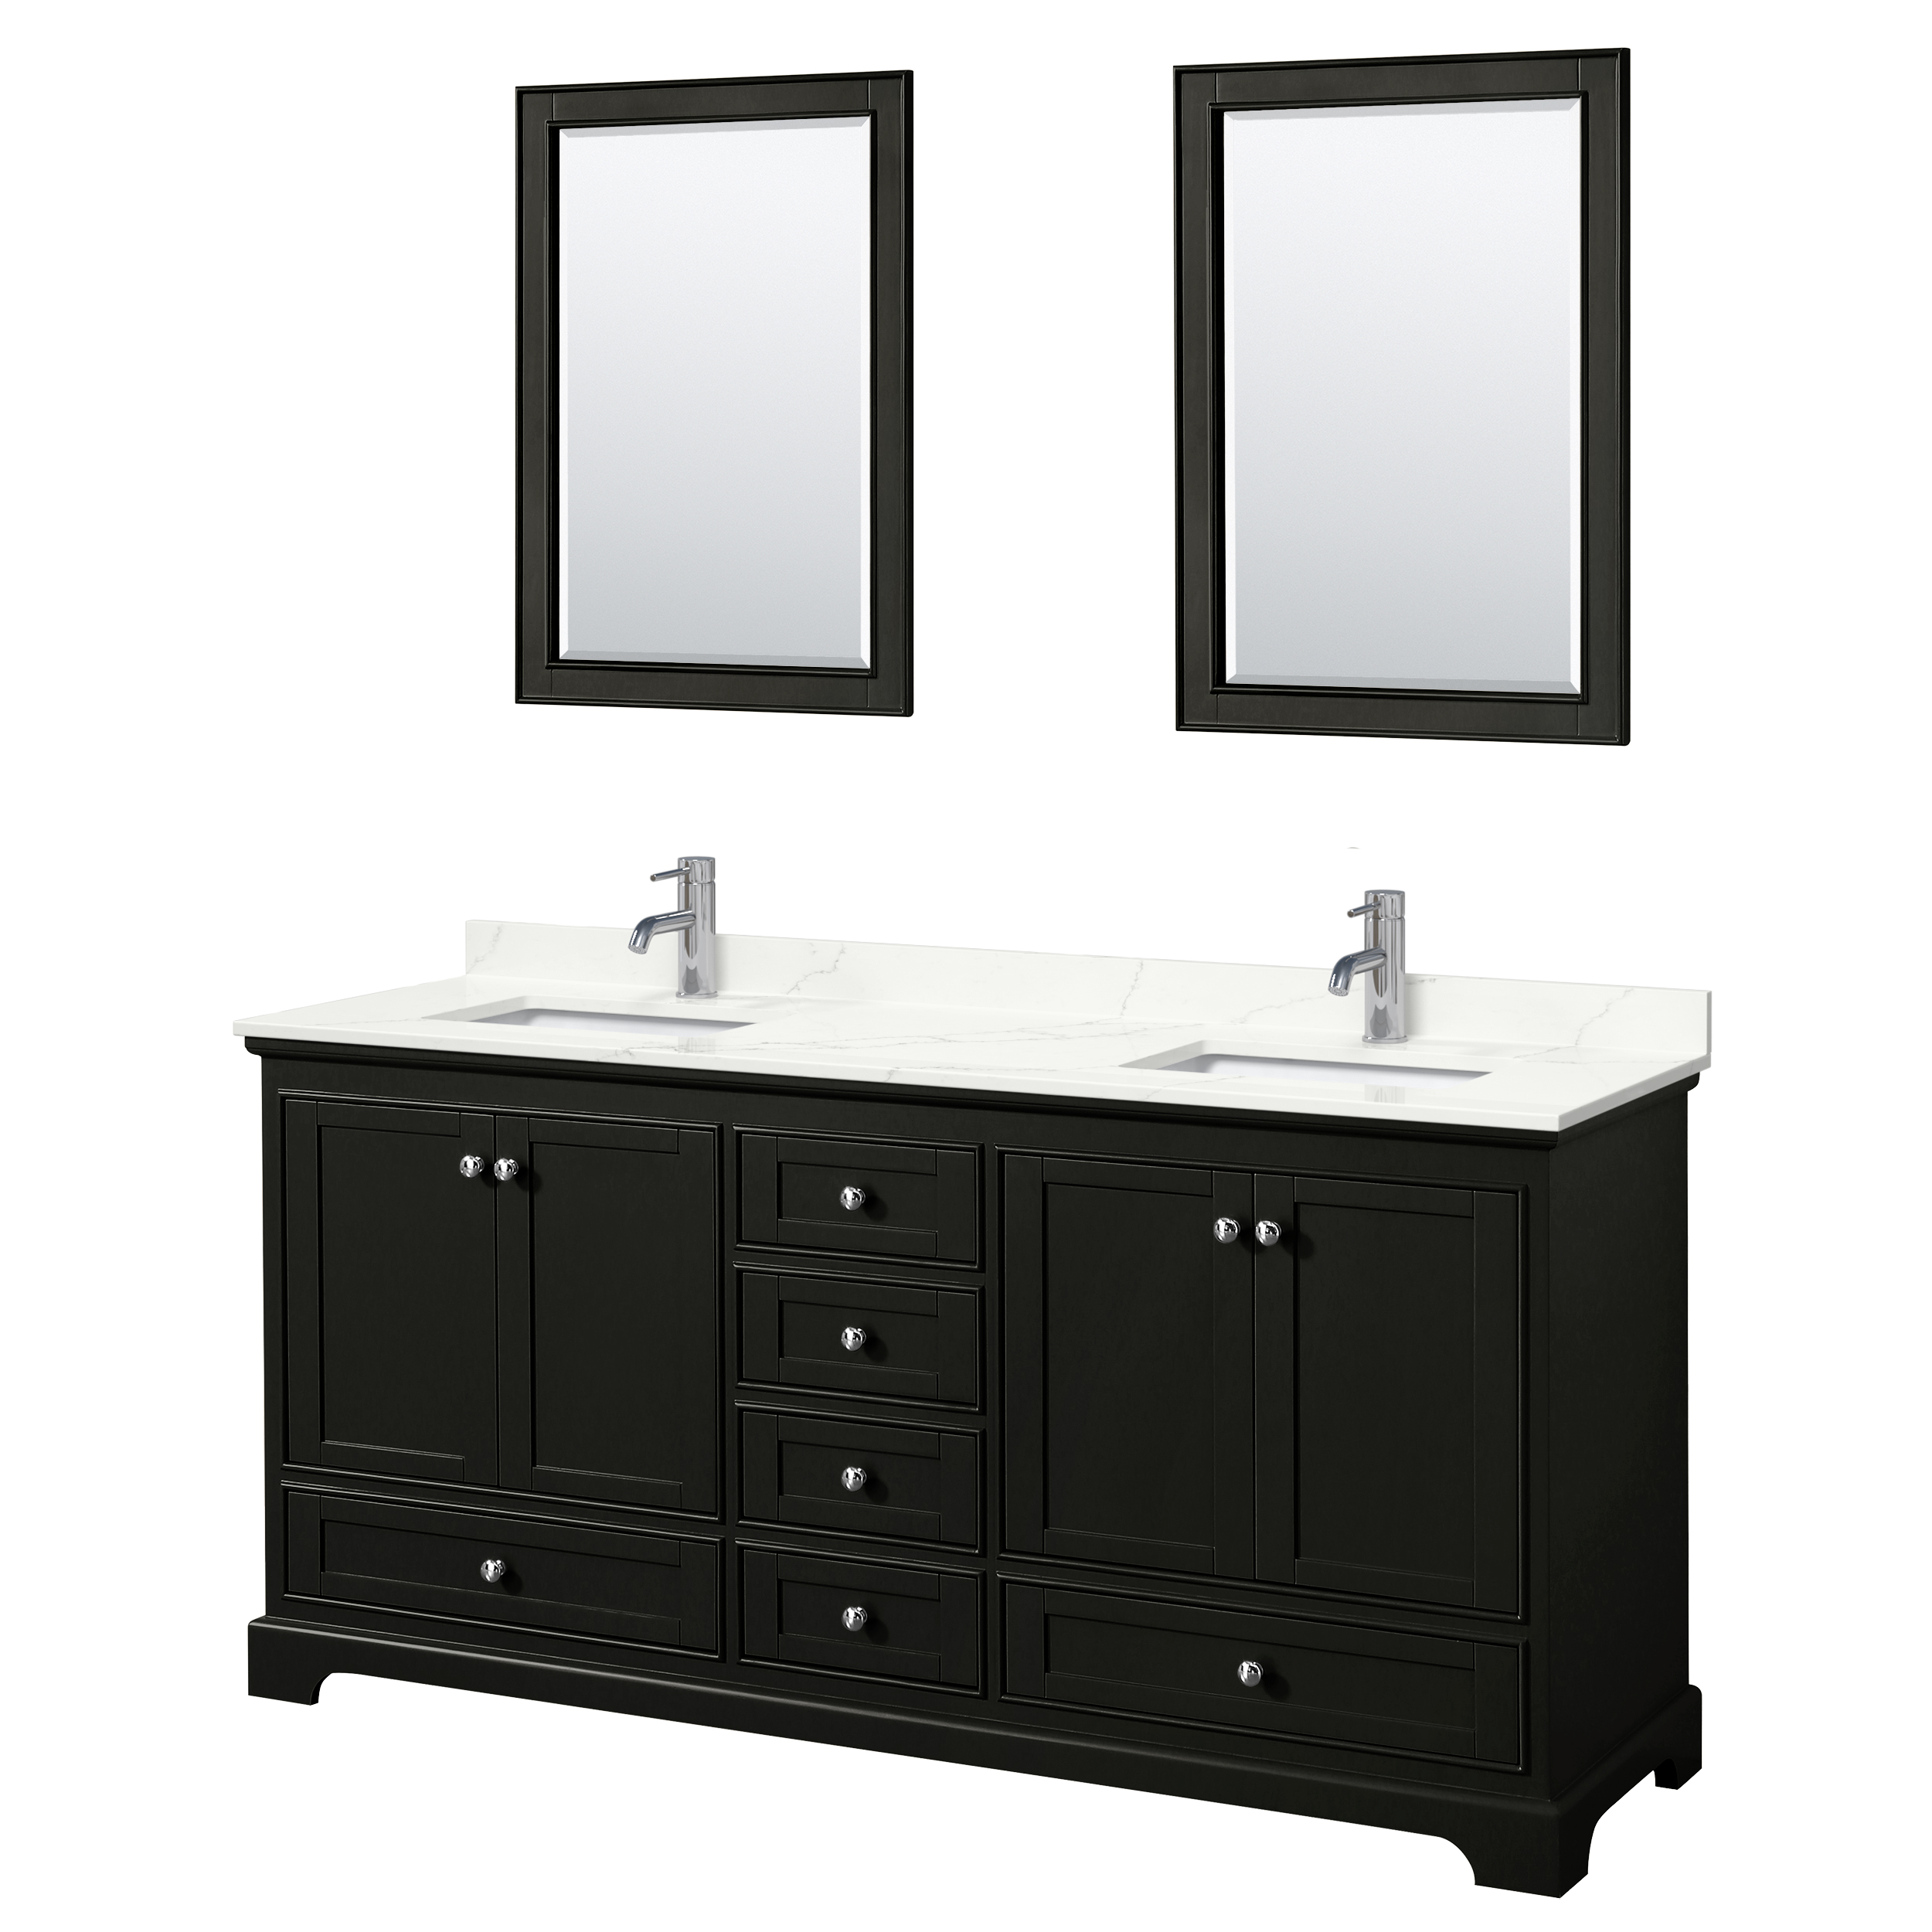 Deborah 72" Double Bathroom Vanity - Dark Espresso WC-2020-72-DBL-VAN-DES_